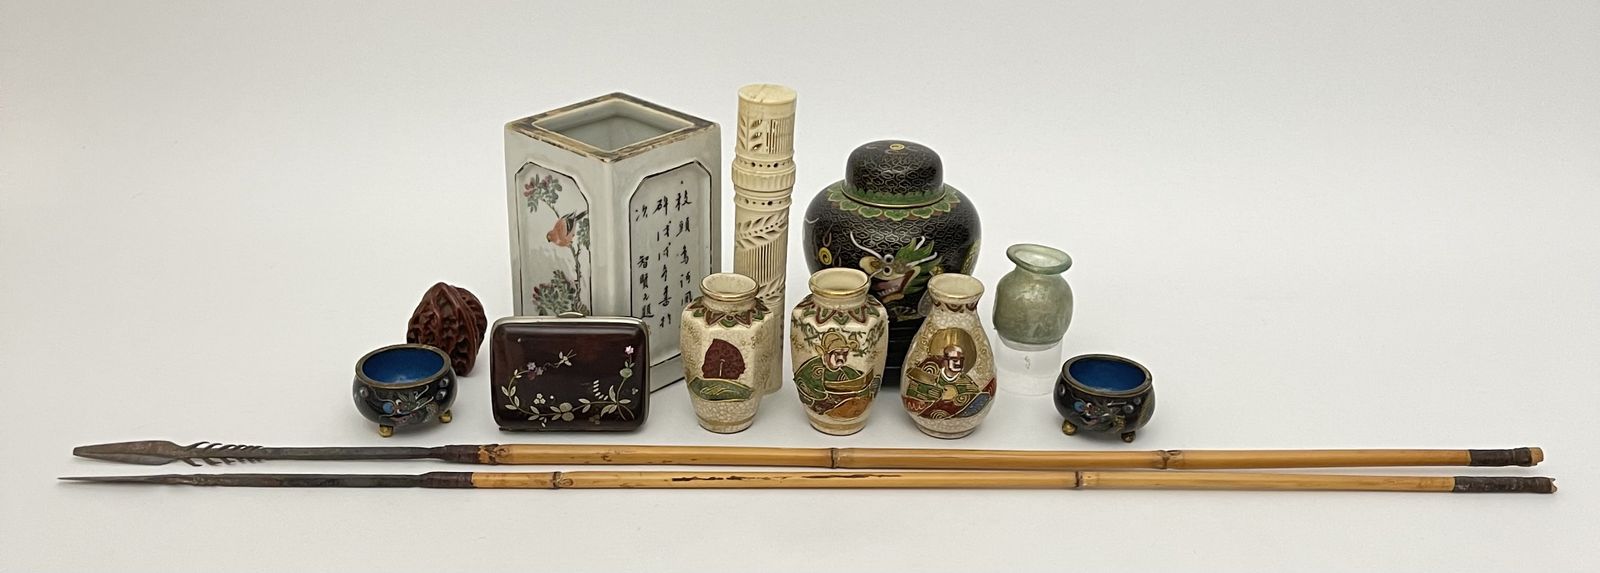 10 Teile chinesisches bzw. japanisches Kunsthandwerk: